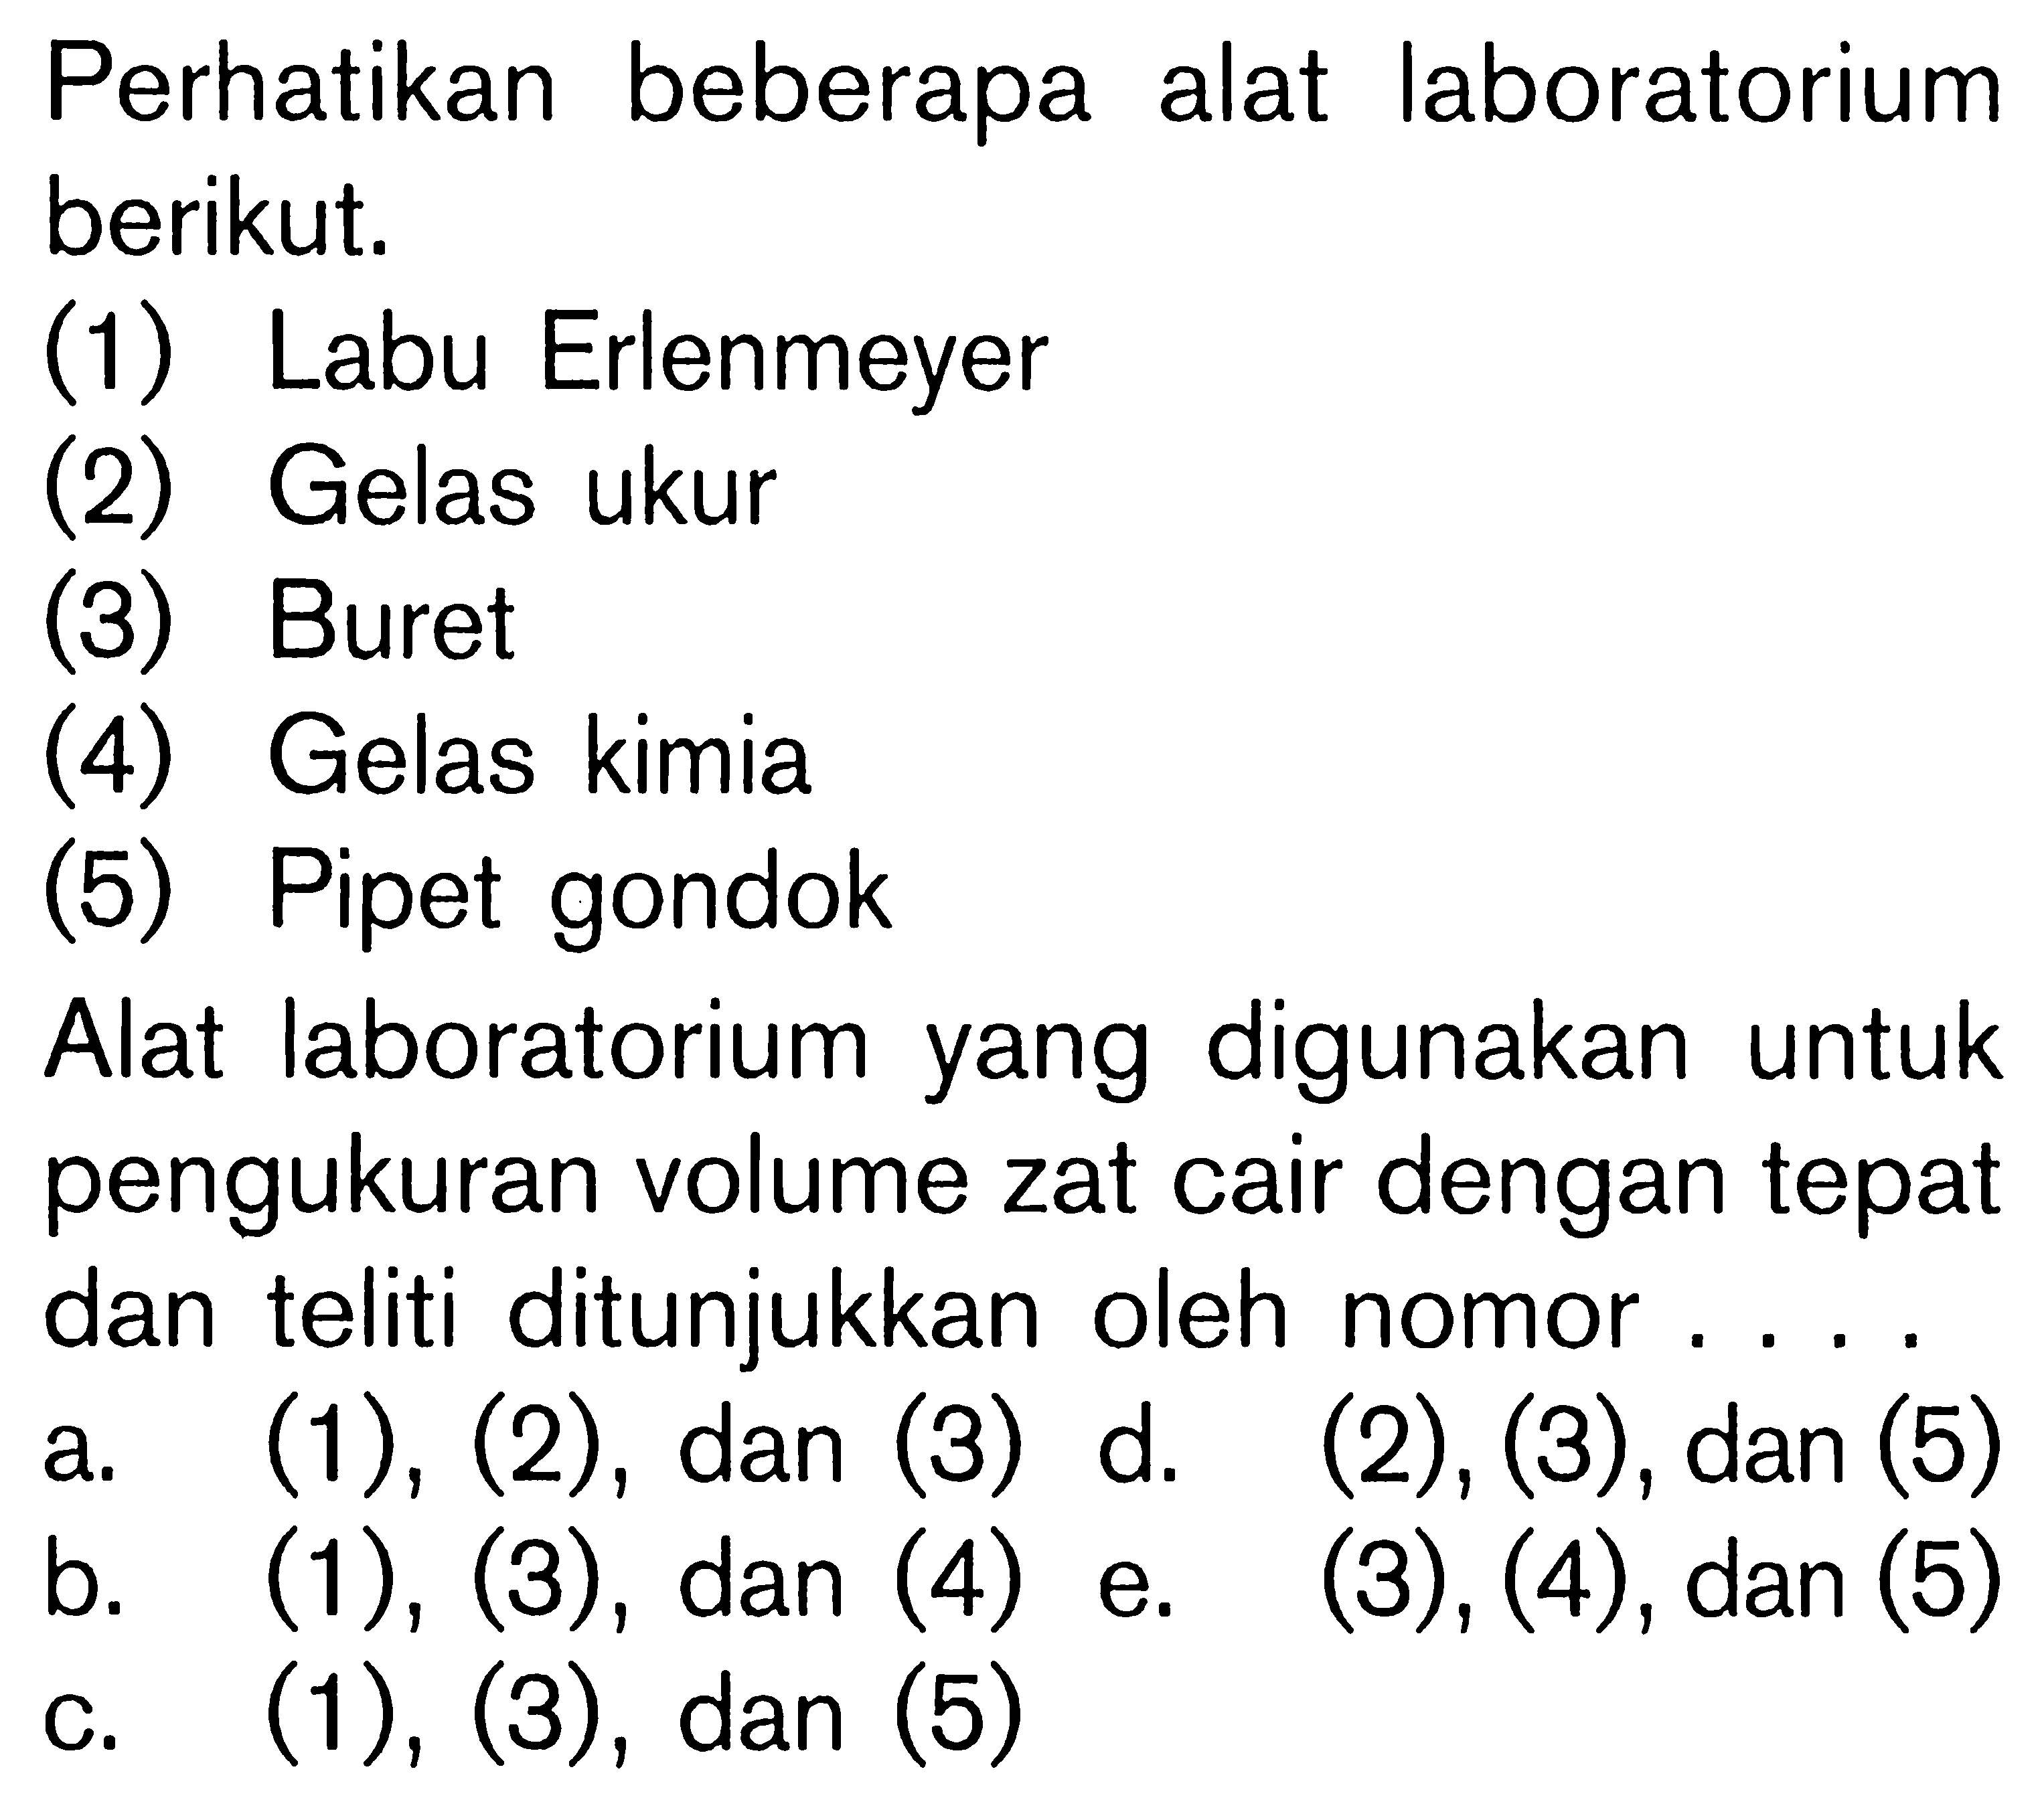 Perhatikan beberapa alat laboratorium berikut, (1) Labu Erlenmeyer (2) Gelas ukur (3) Buret (4) Gelas kimia (5) Pipet gondok. Alat laboratorium yang digunakan untuk pengukuran volume zat cair dengan tepat dan teliti ditunjukkan oleh nomor